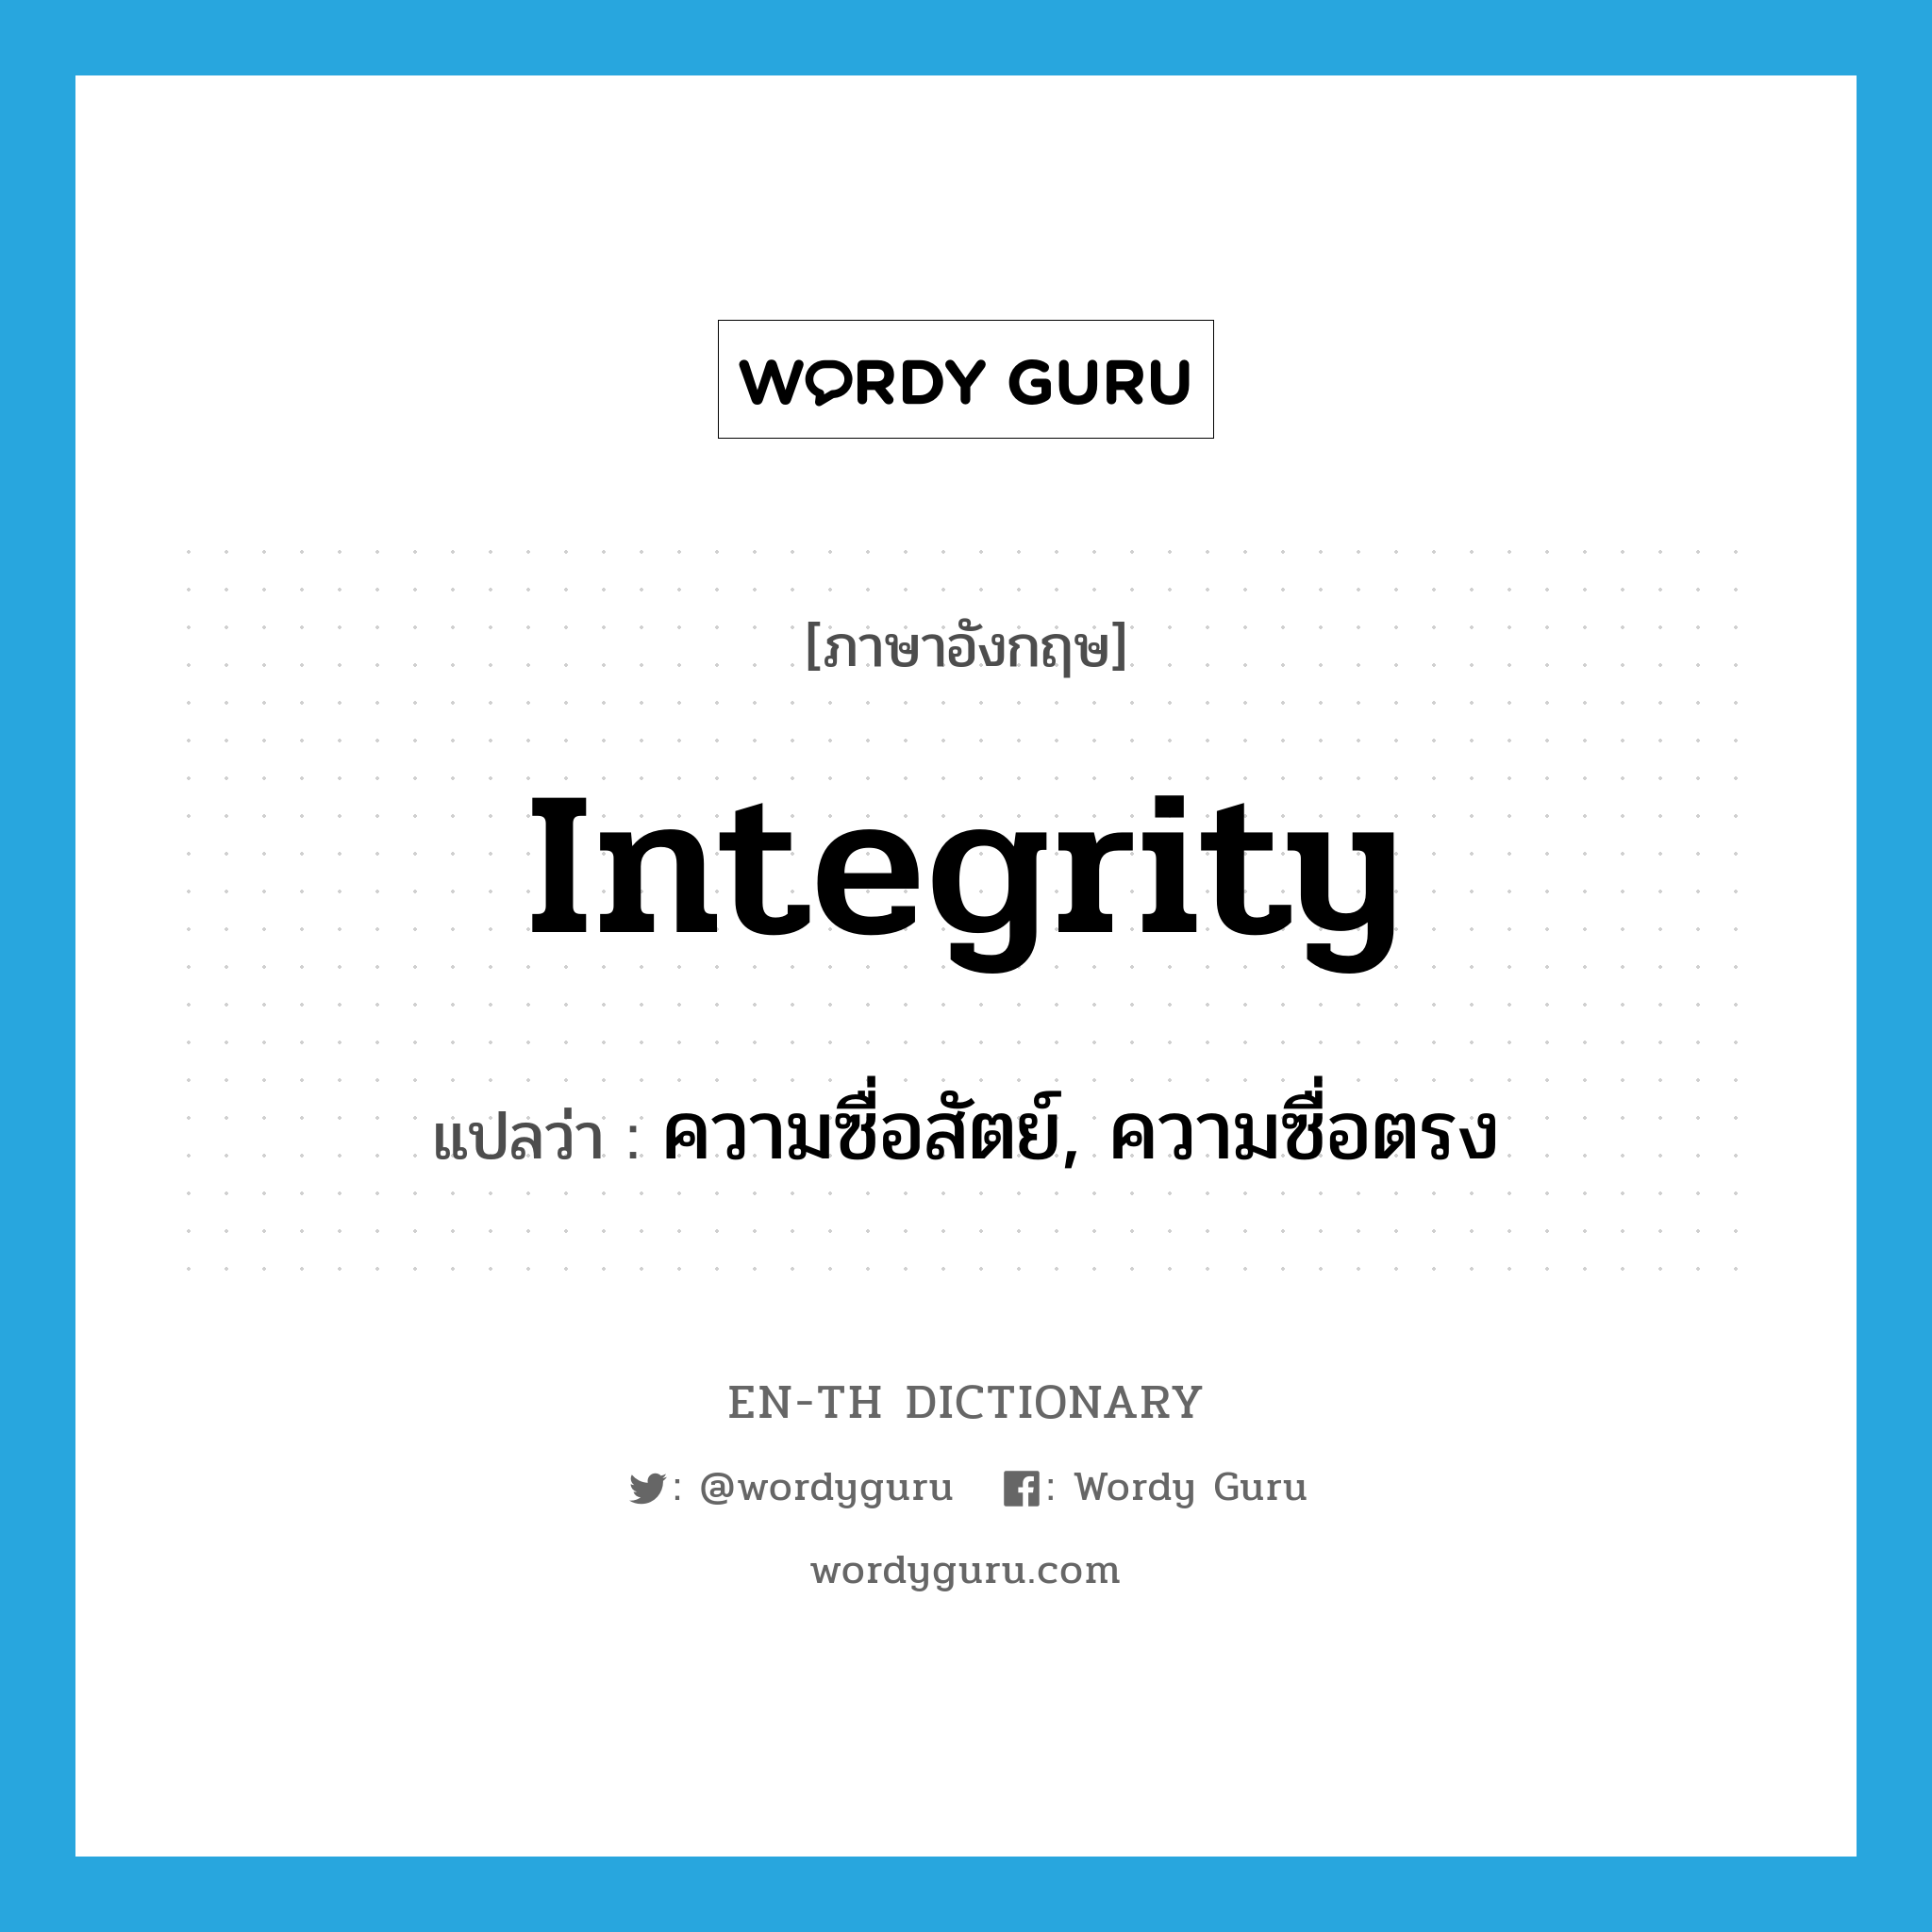 ความซื่อสัตย์, ความซื่อตรง ภาษาอังกฤษ?, คำศัพท์ภาษาอังกฤษ ความซื่อสัตย์, ความซื่อตรง แปลว่า integrity ประเภท N หมวด N